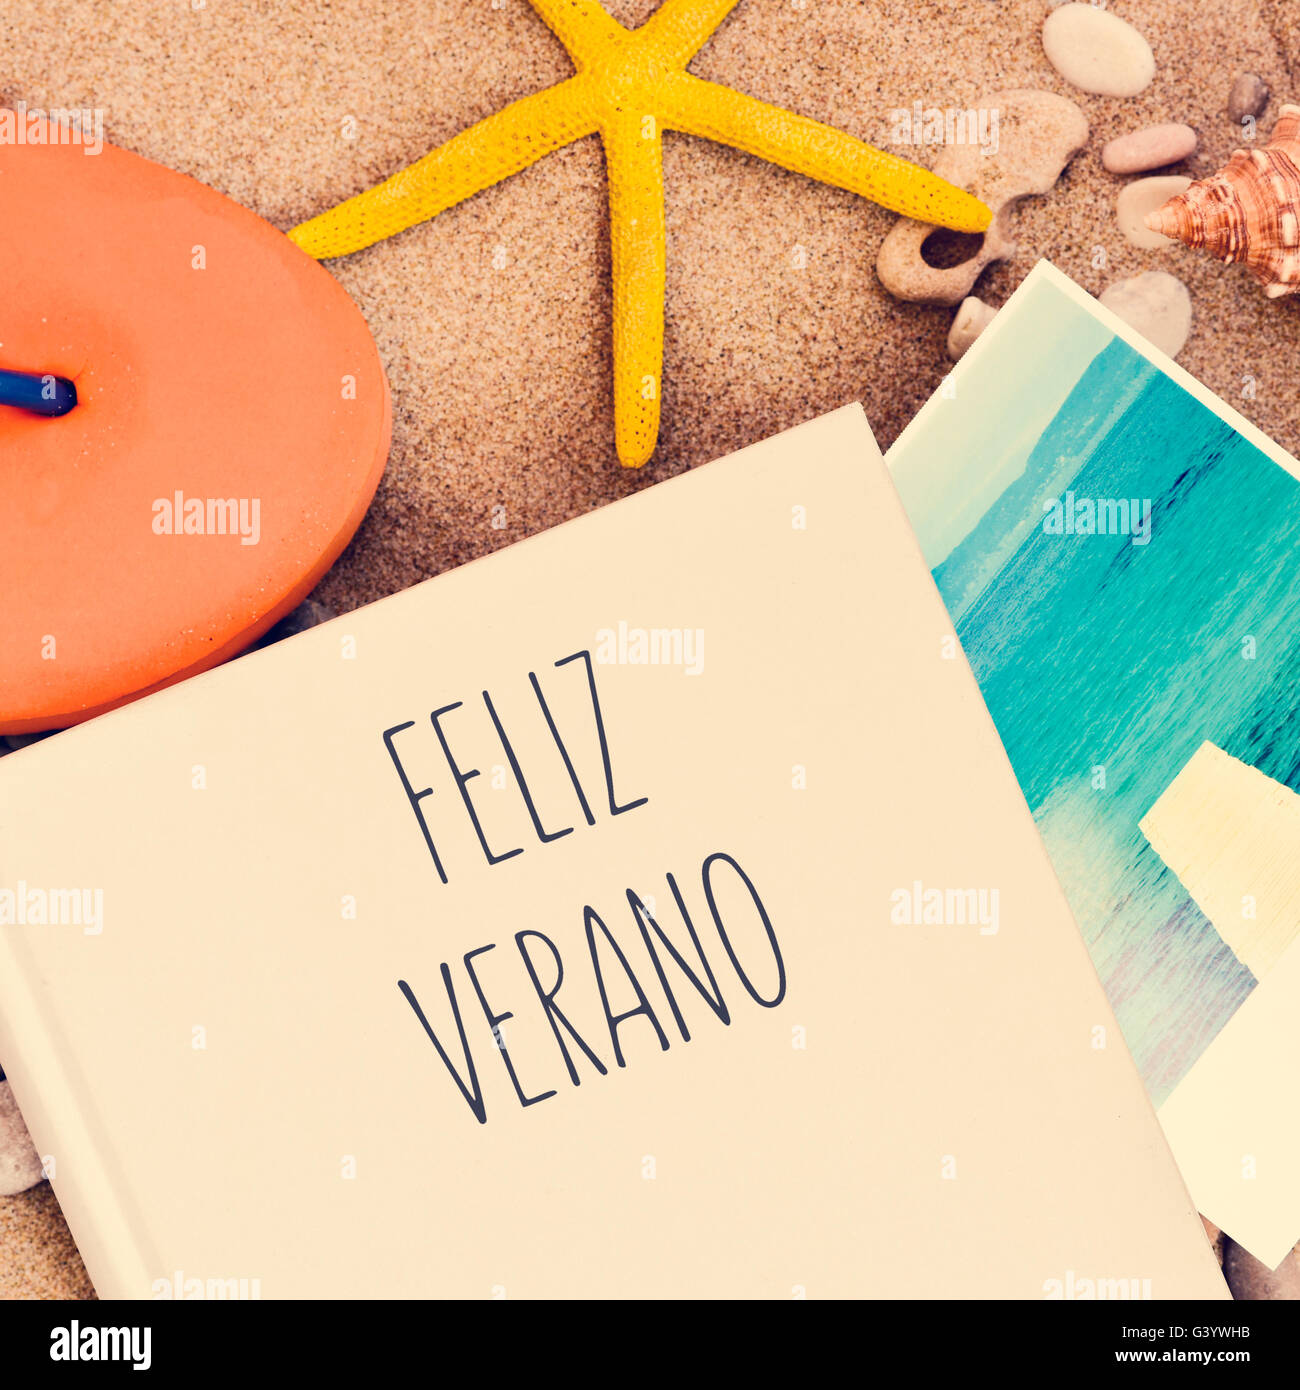 Capture d'un grand angle d'un livre avec le texte feliz verano, bonnes  vacances en espagnol écrit dans son couvercle orange, une volte-face, un  starf Photo Stock - Alamy